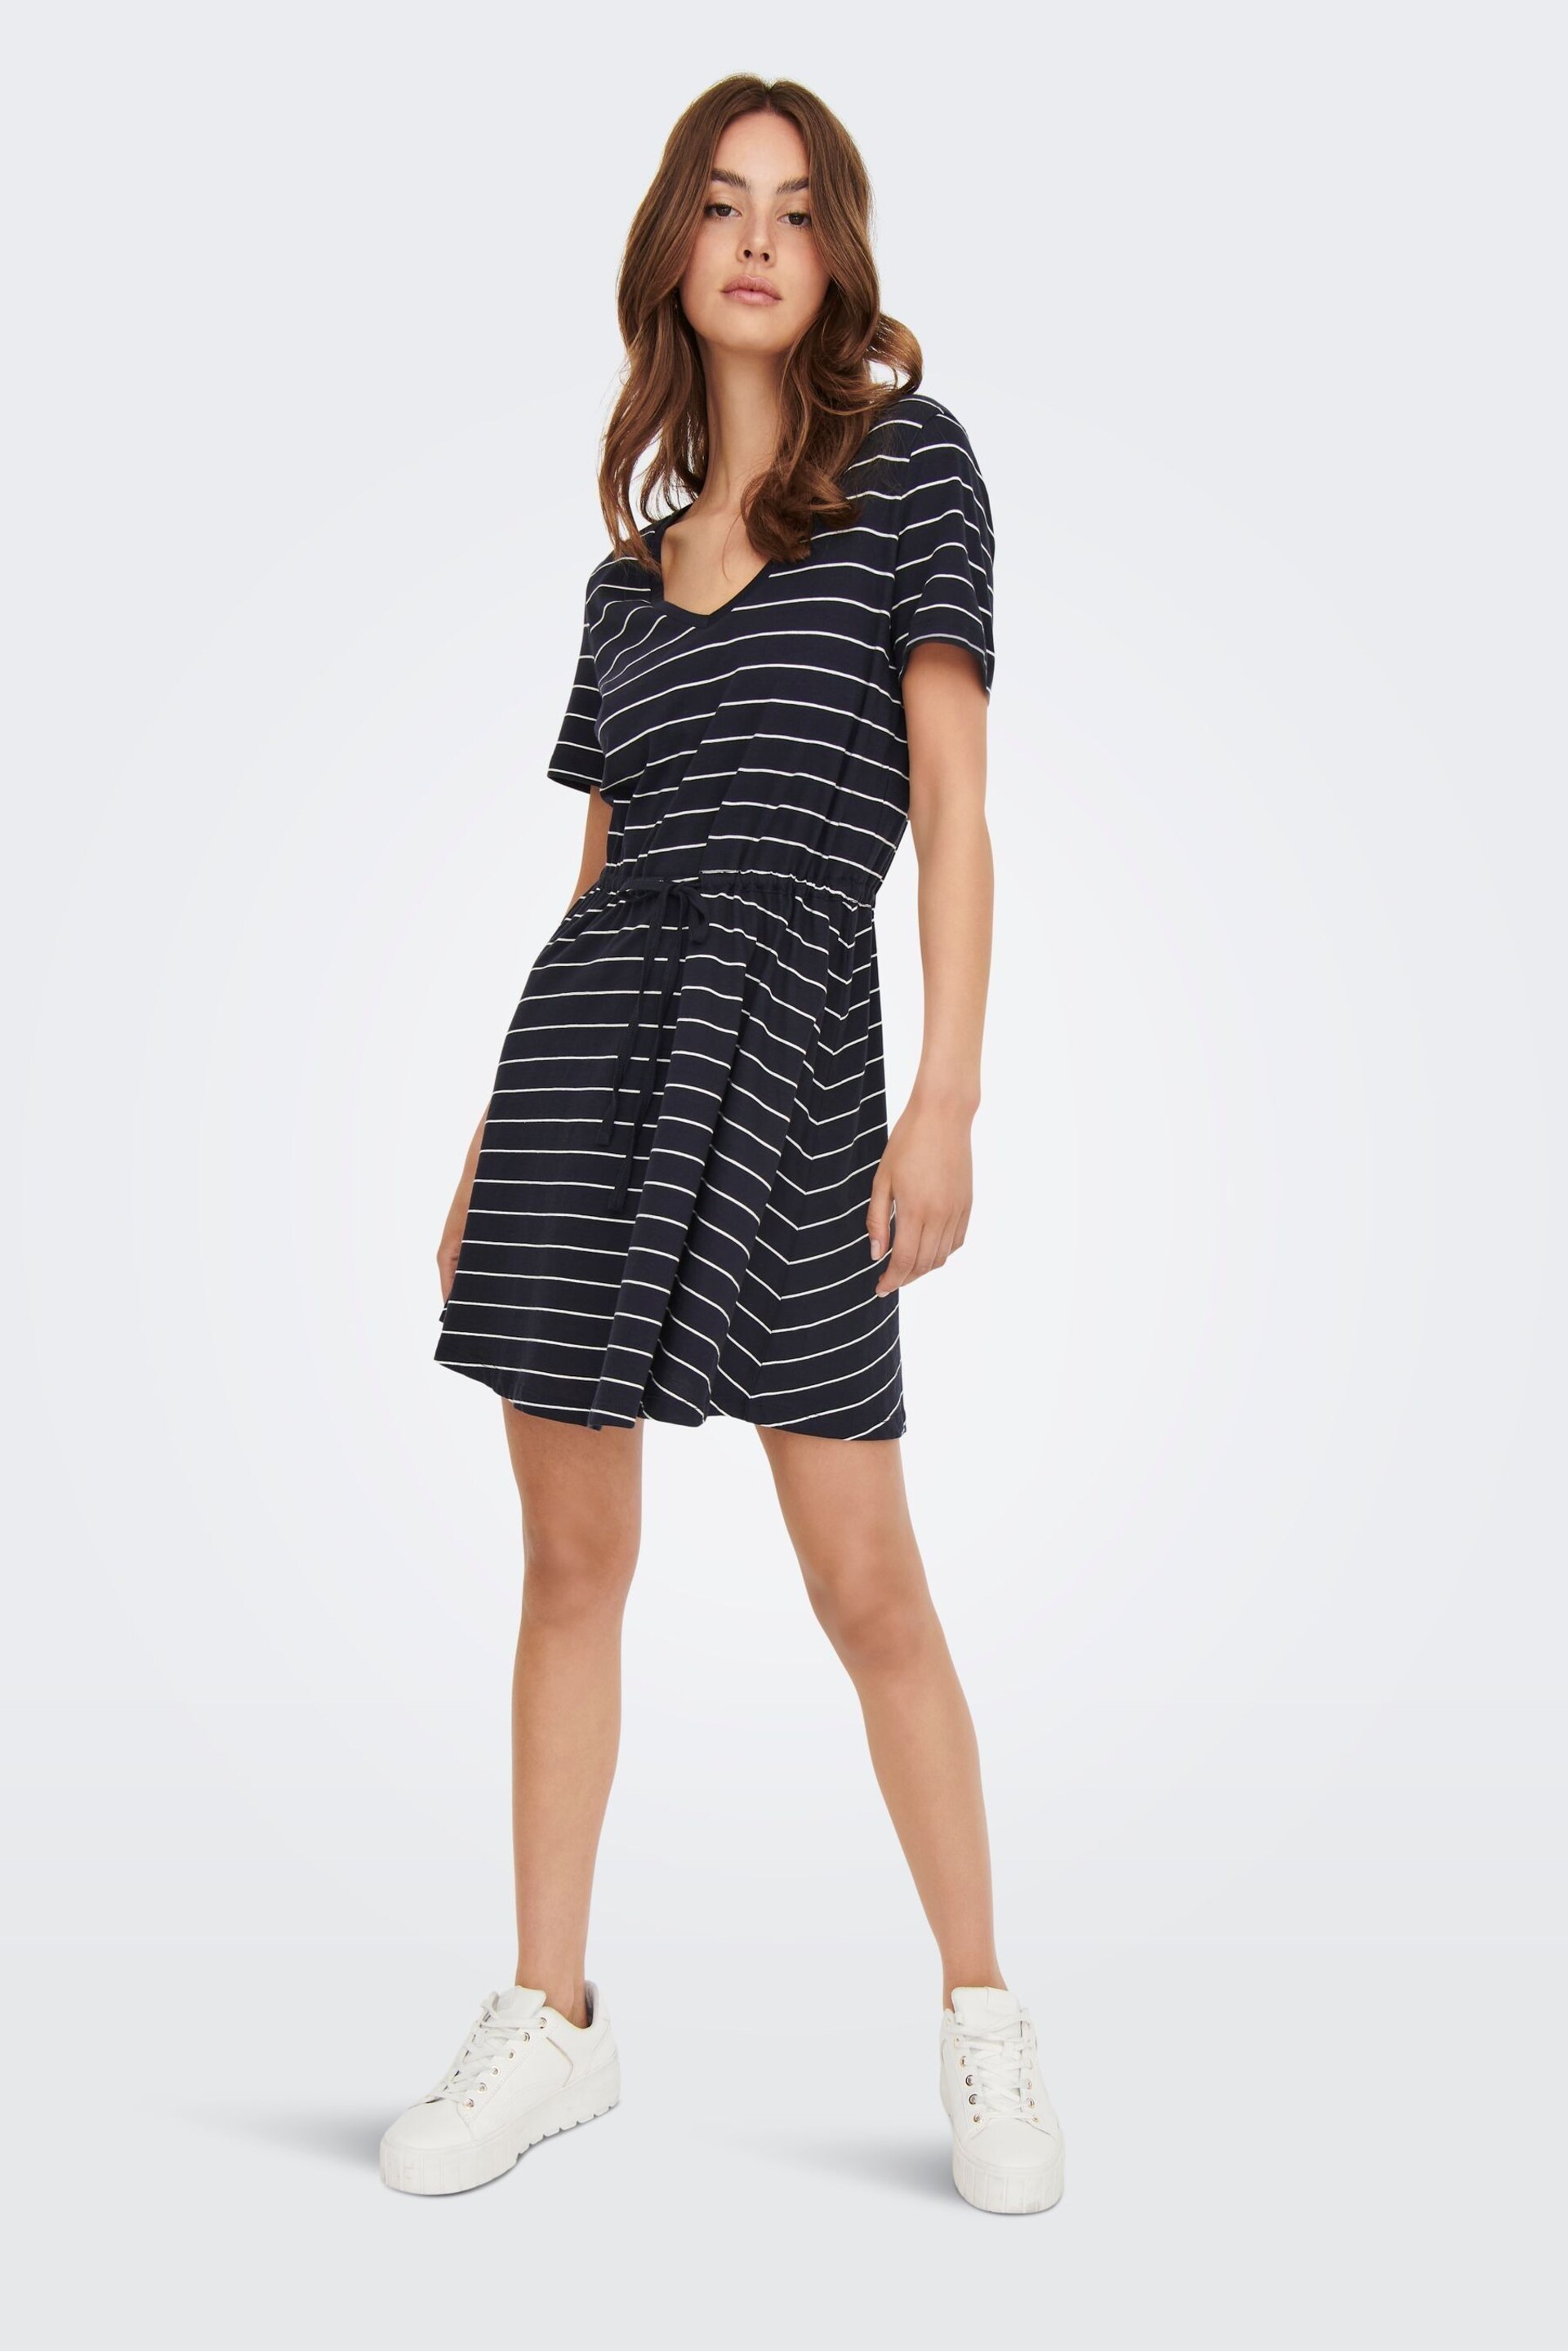 ONLY Curve Navy Blue & White Stripes V Neck Jersey T-Shirt Dress - Image 3 of 4